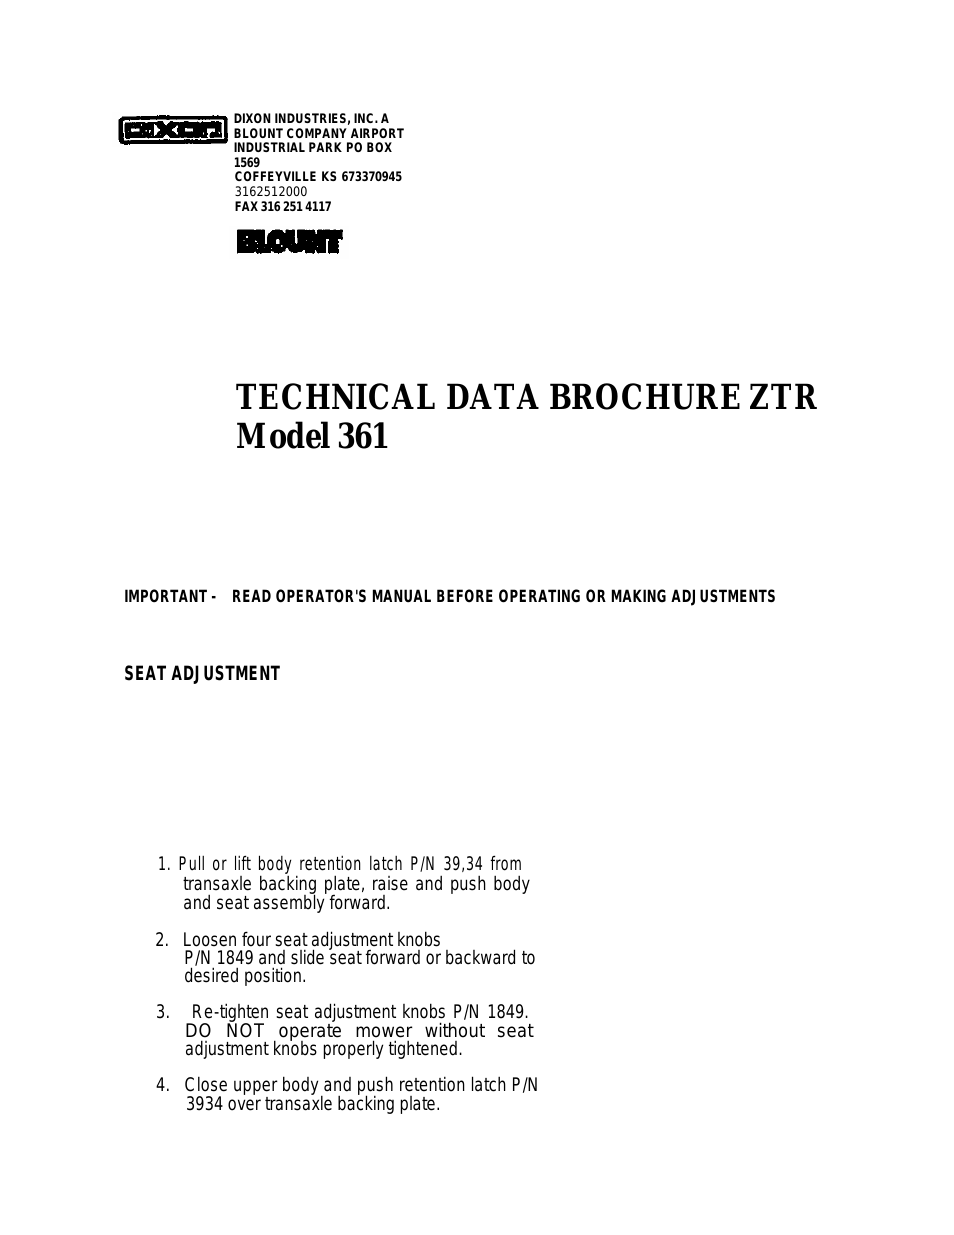 TECHNICAL DATA BROCHURE ZTR 361